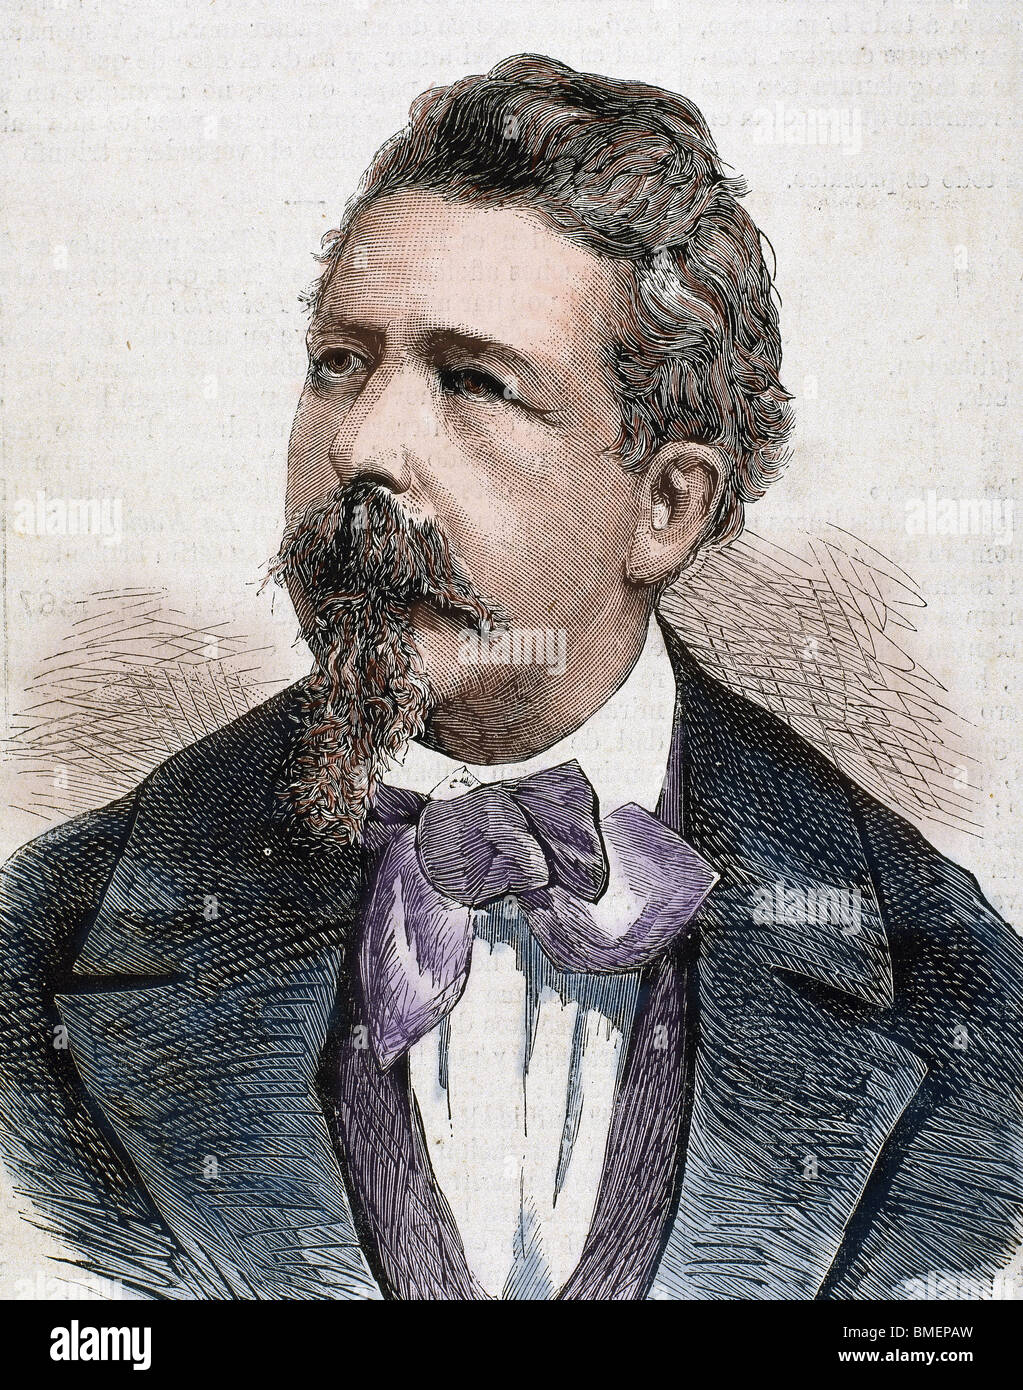 CAIROLI, Benedetto (Pavia ,1825-Capodimonte, 1889). Italian politician. Engraving by Carretero. Stock Photo